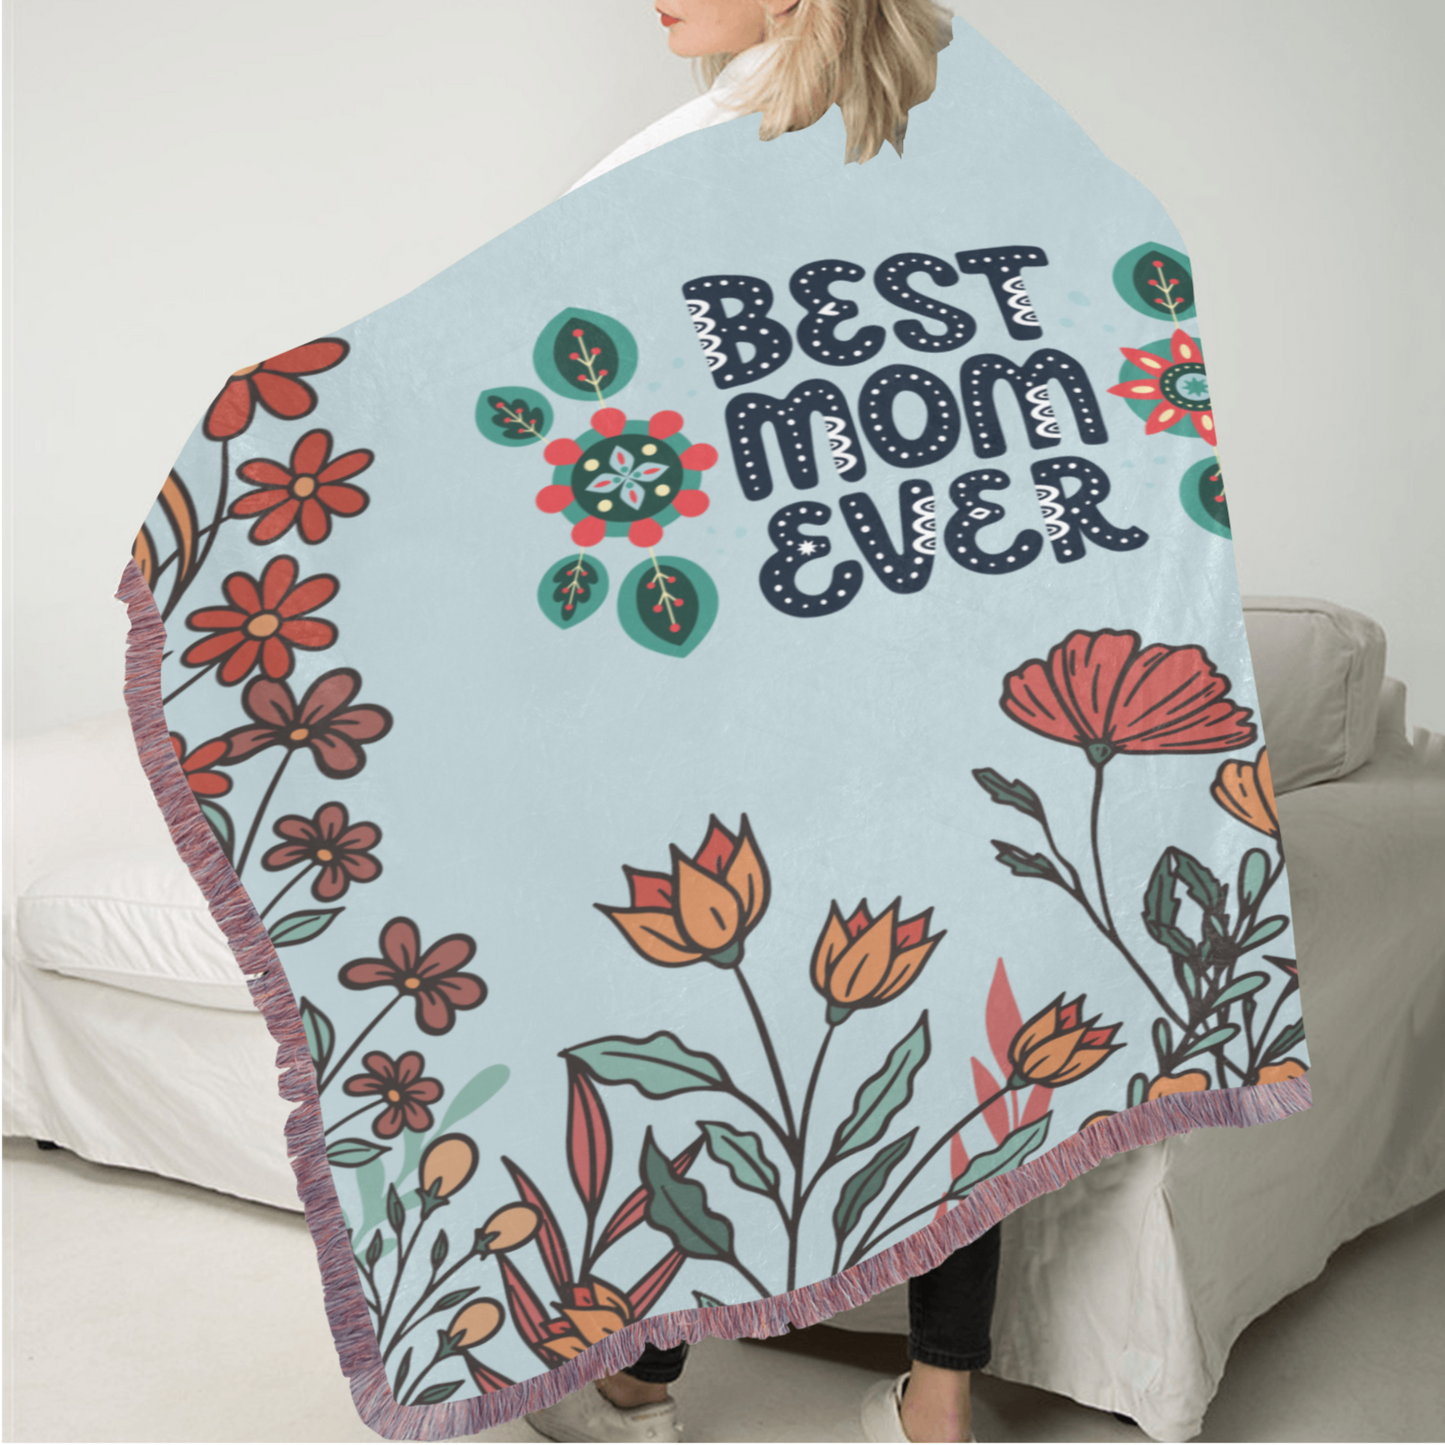 Best Mom Fringe Blanket